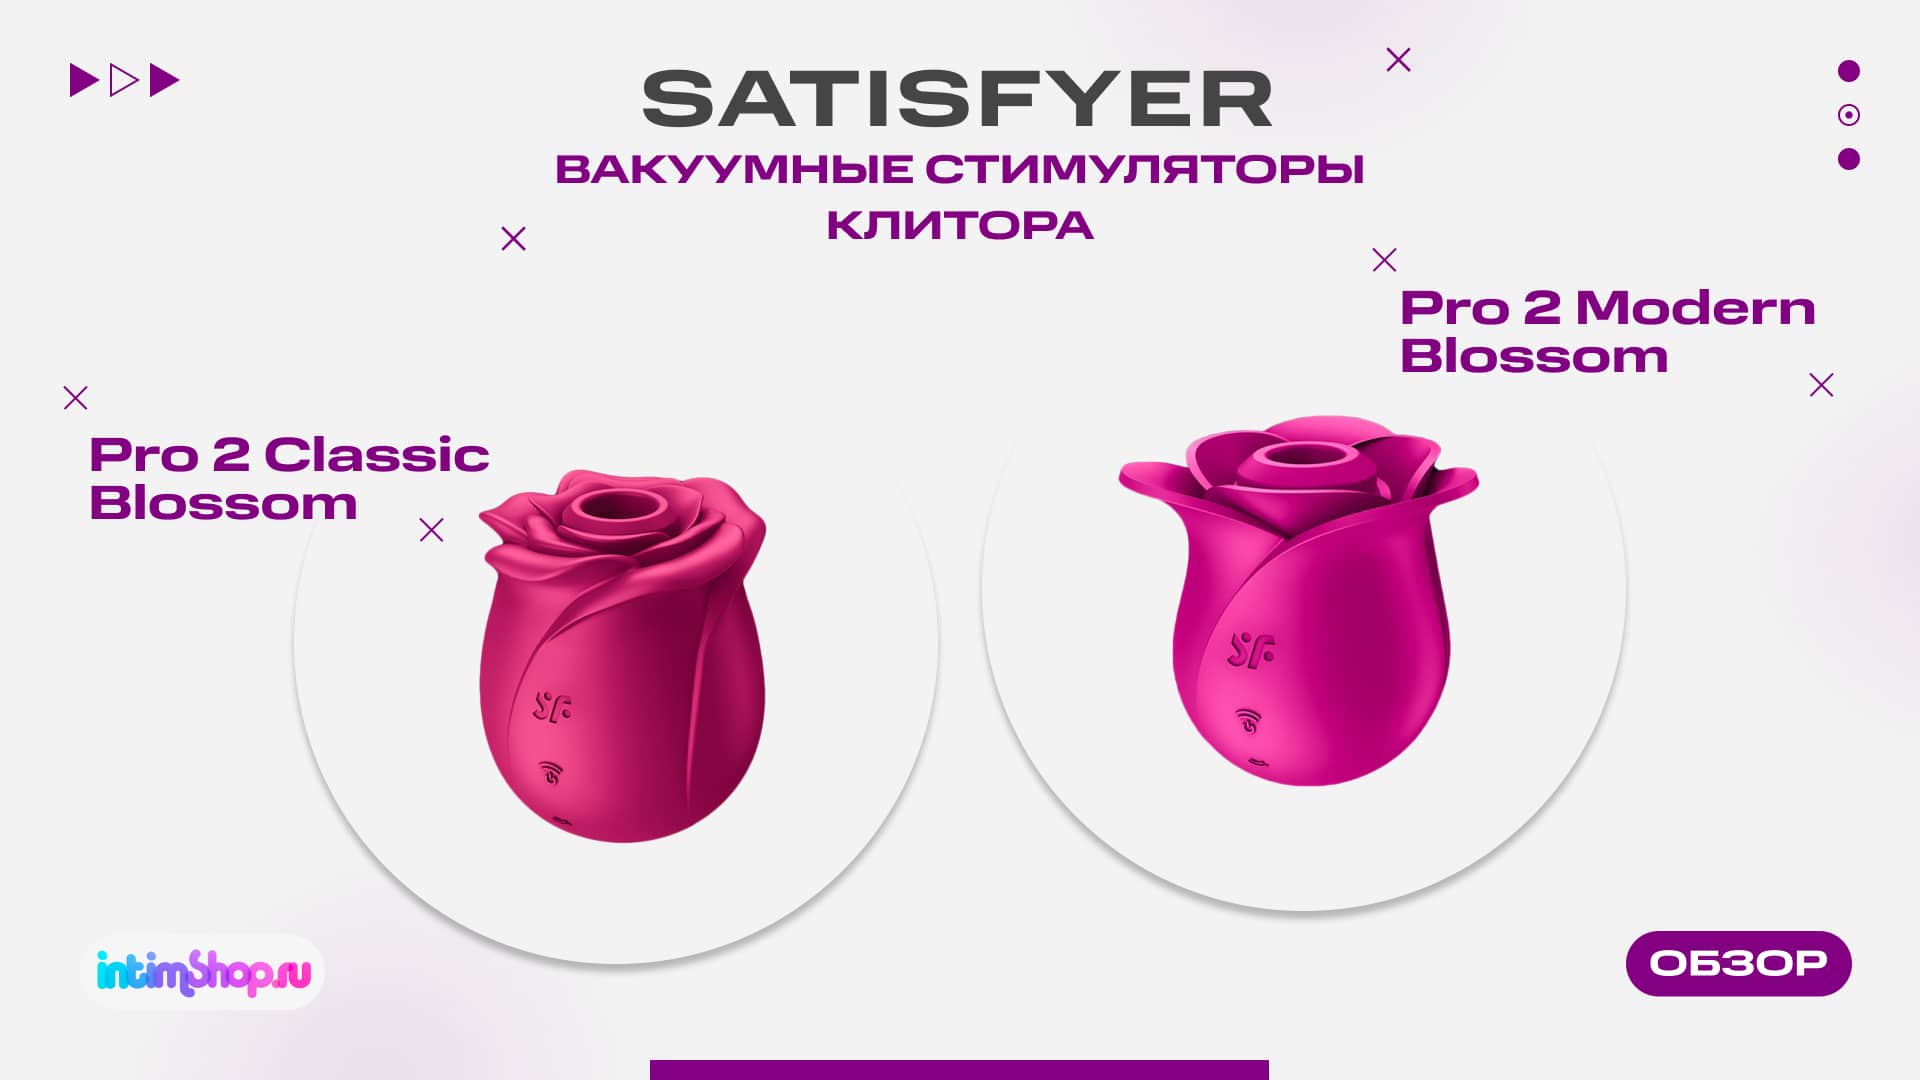 Цветочные новинки от бренда Satisfyer - Pro 2 Classic Blossom и Modern Blossom